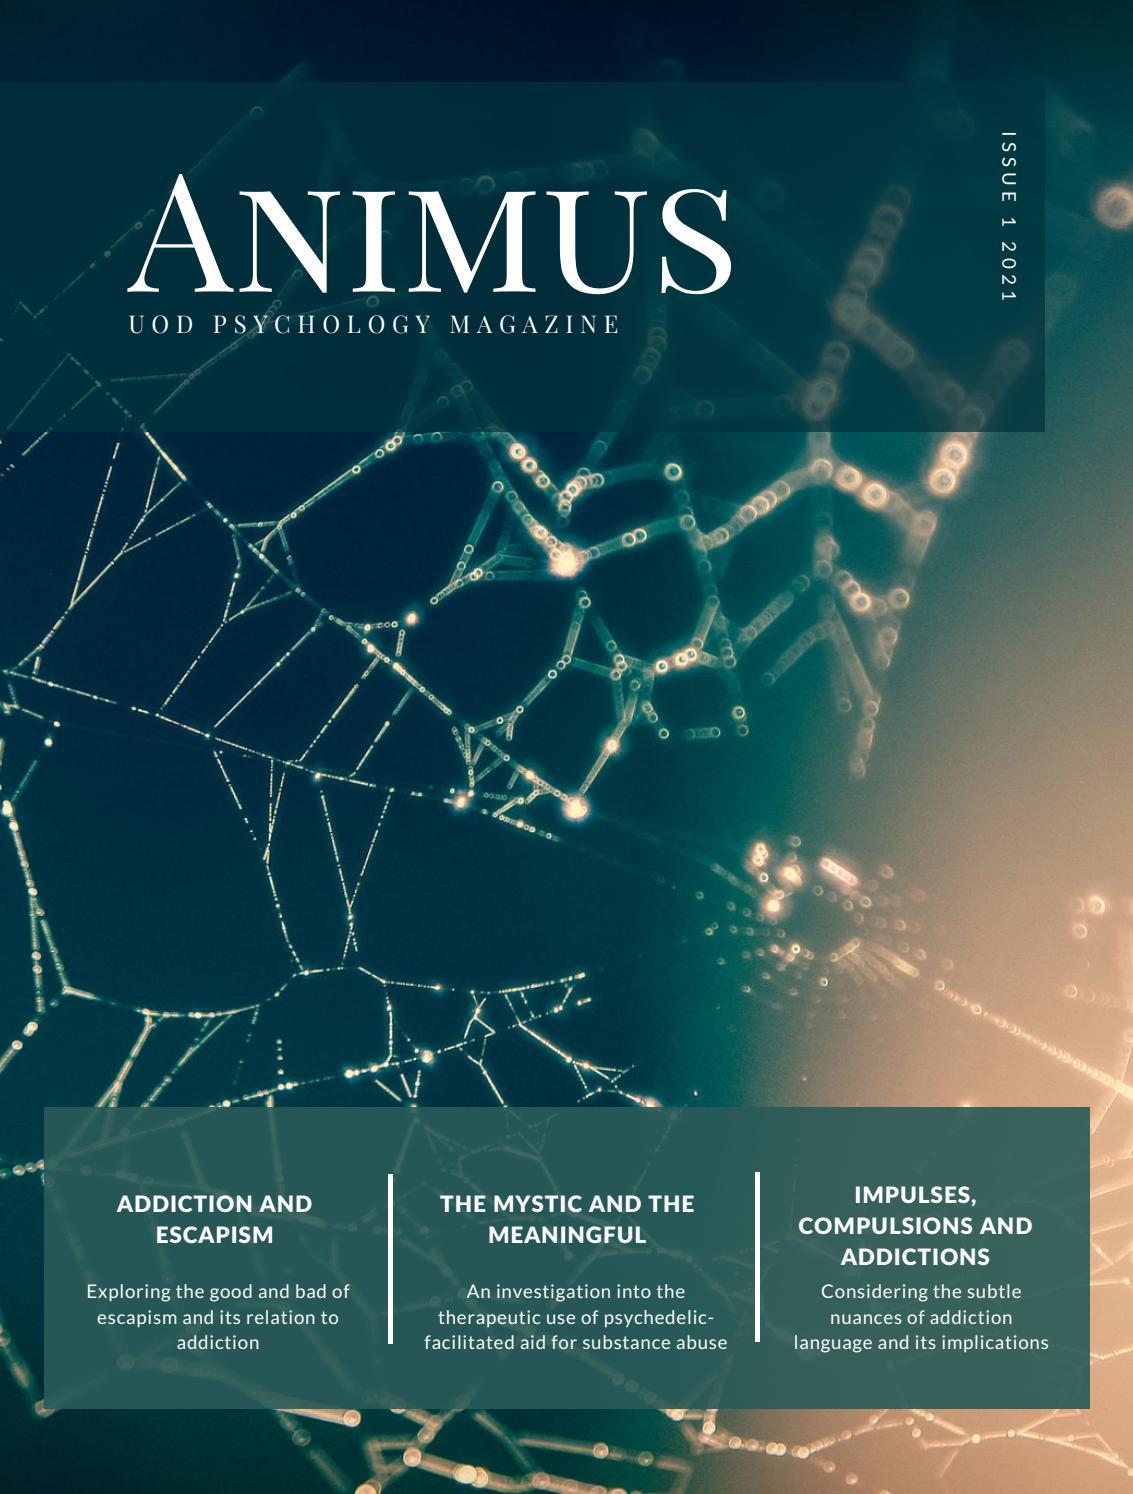 UoD Psychology Magazine – Animus